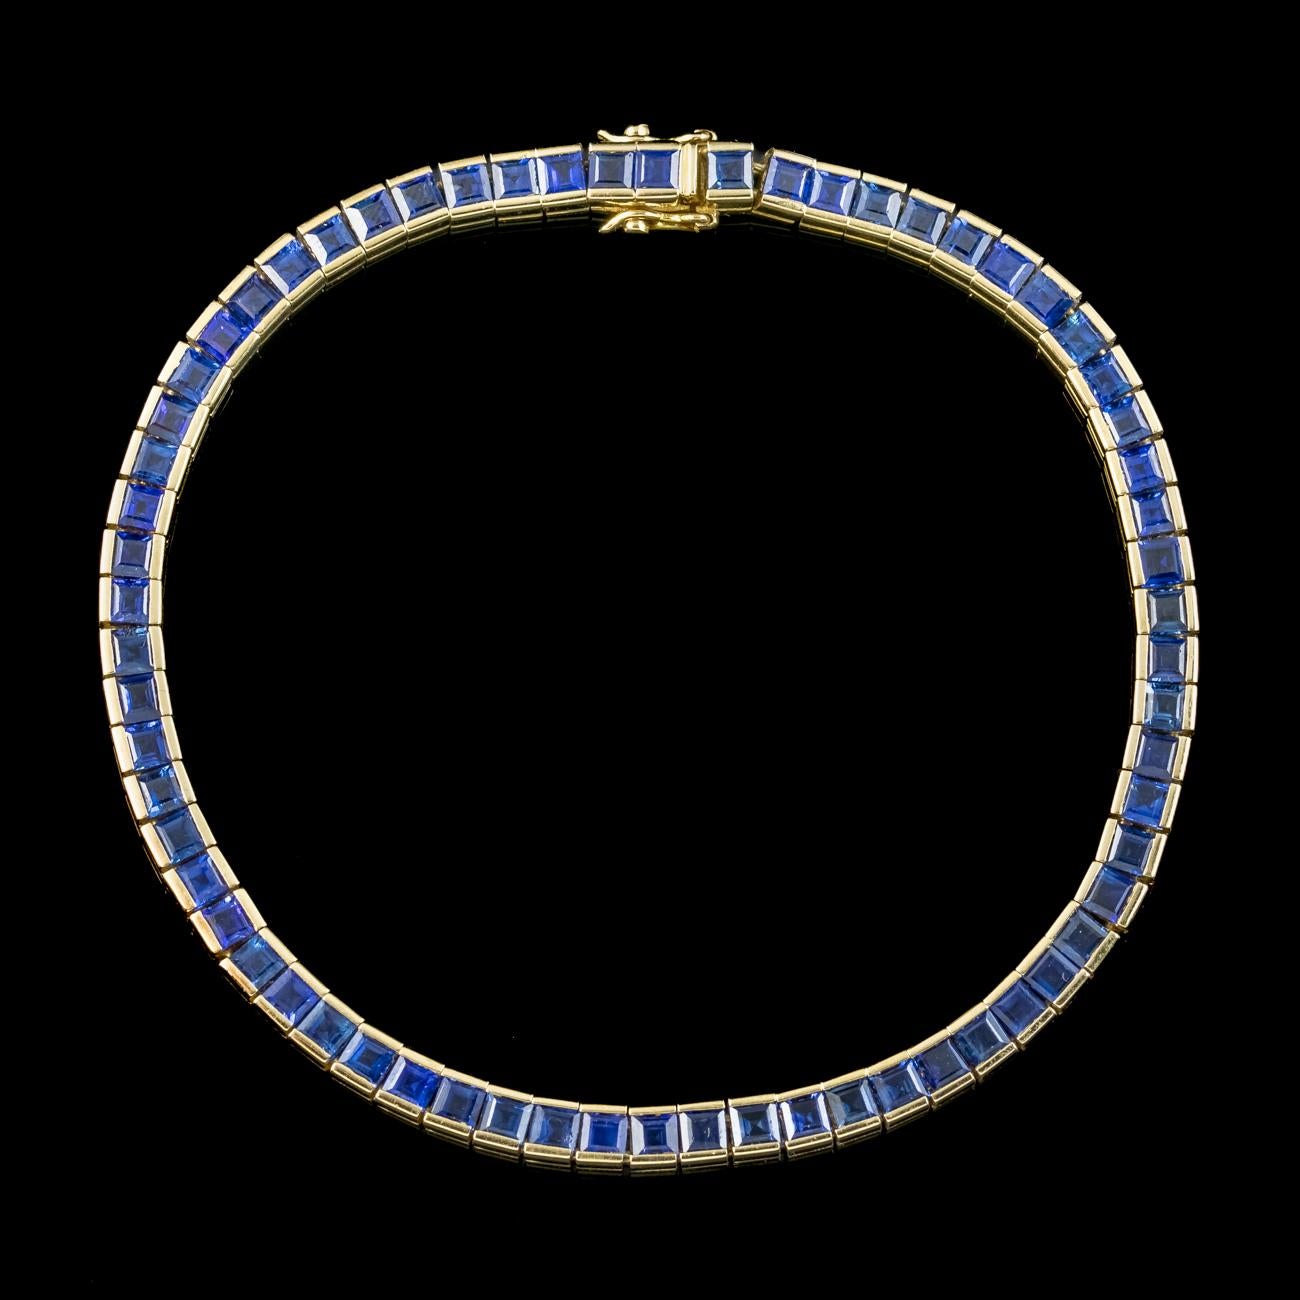 Square Cut Art Deco Style Sapphire Tennis Bracelet 18ct Gold 6.5ct Total For Sale